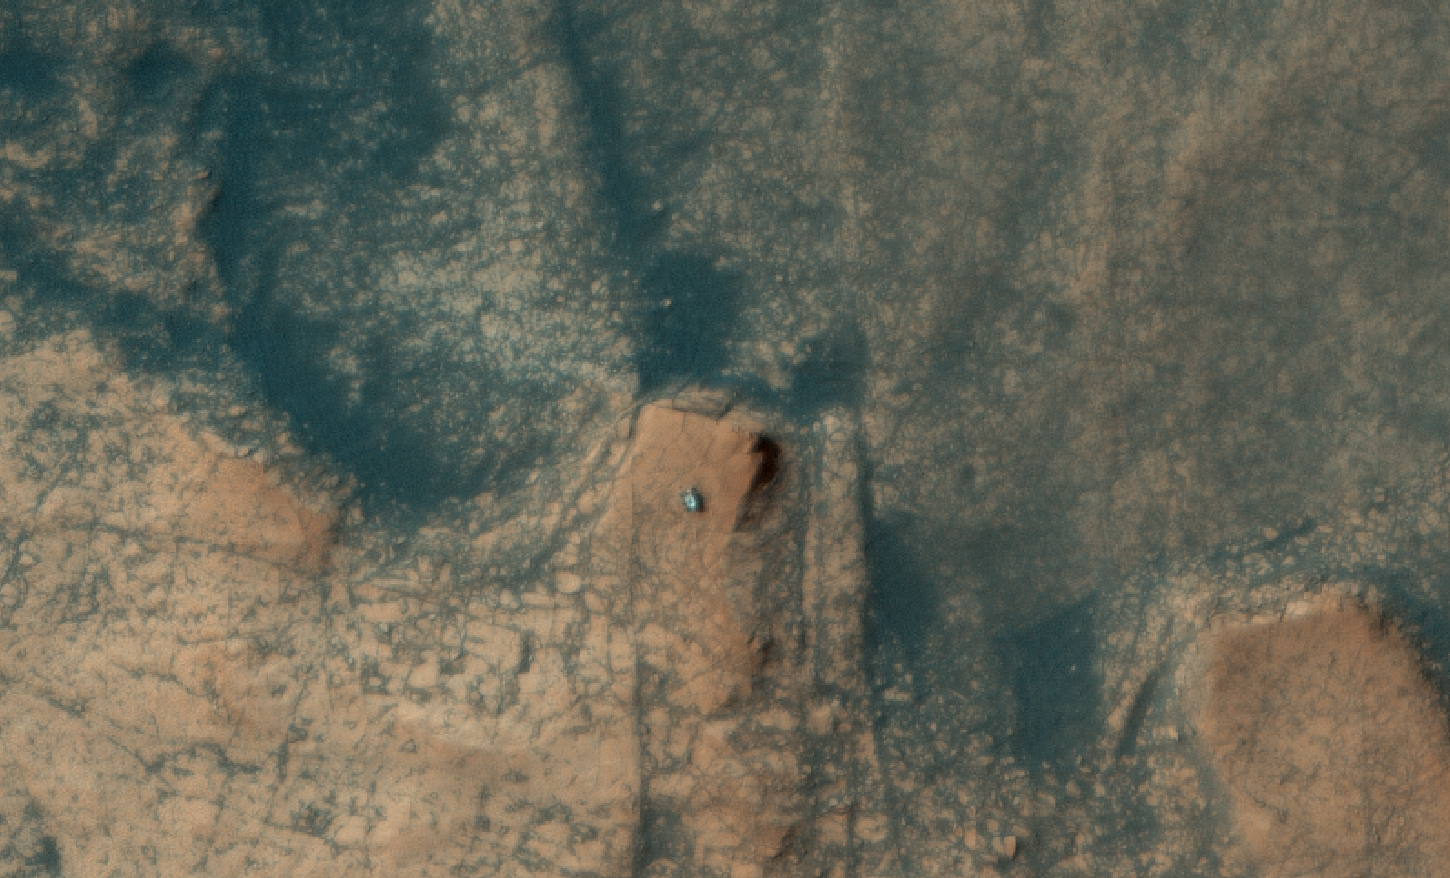 Марсоход Curiosity с ветхими колесами лезет на скалу в кратере Гейл – фото с орбиты